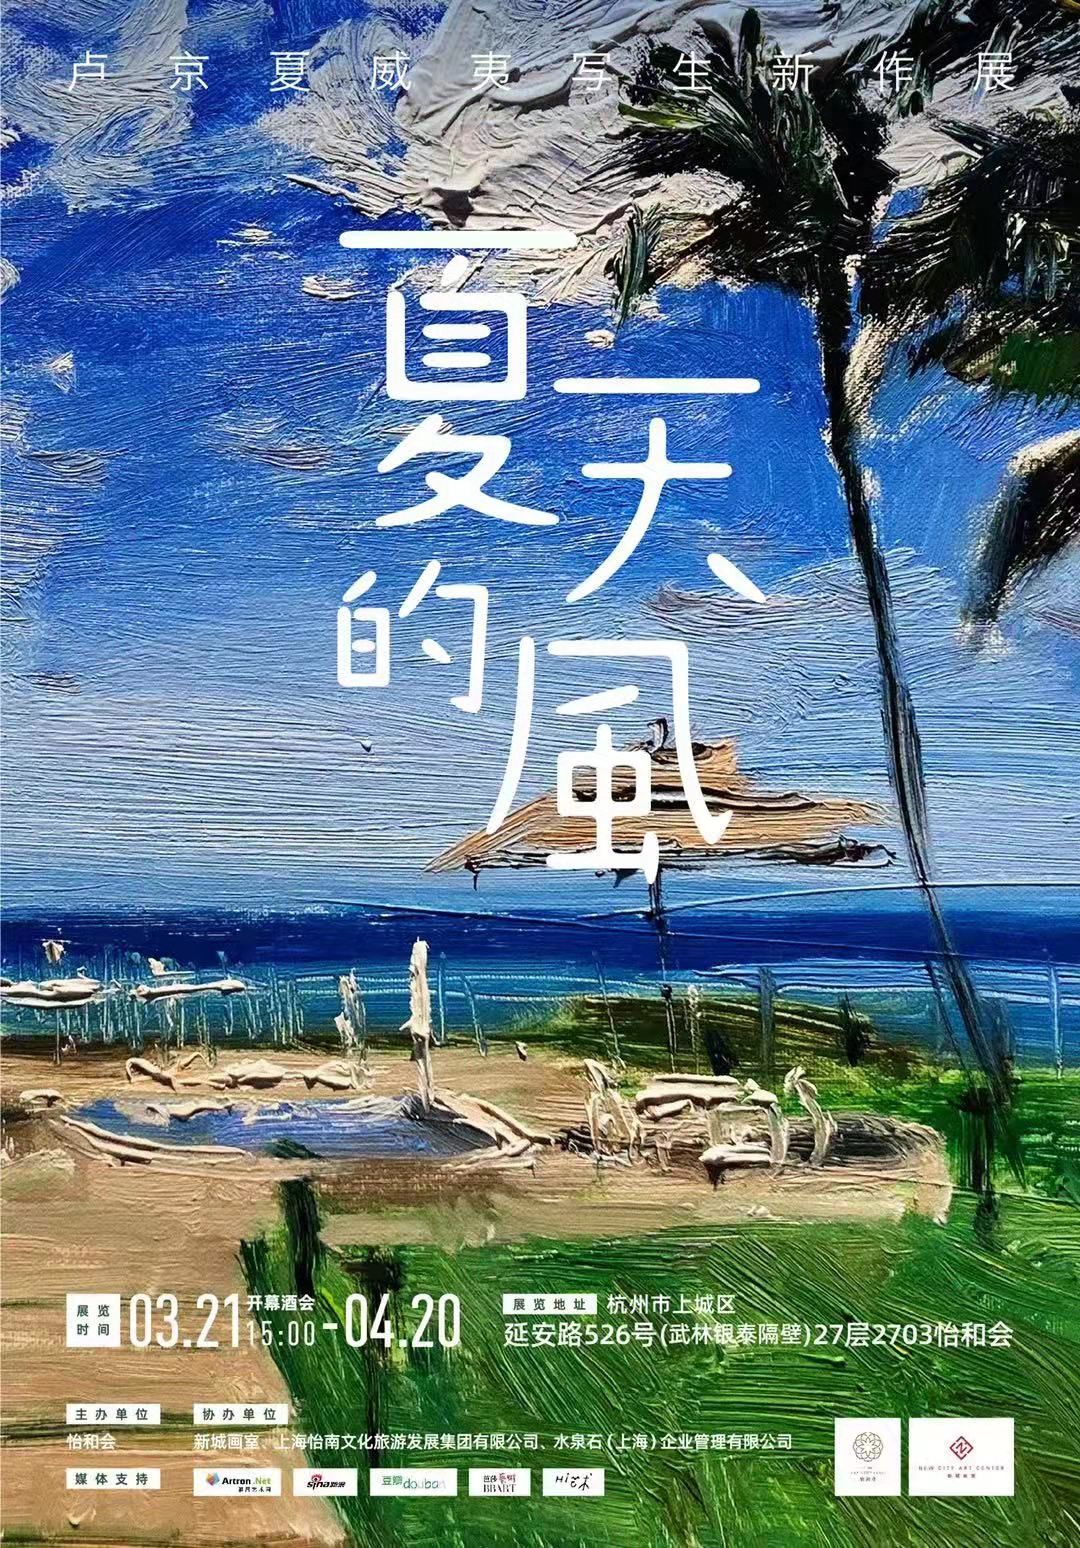 “夏天的风”卢京夏威夷写生作品展